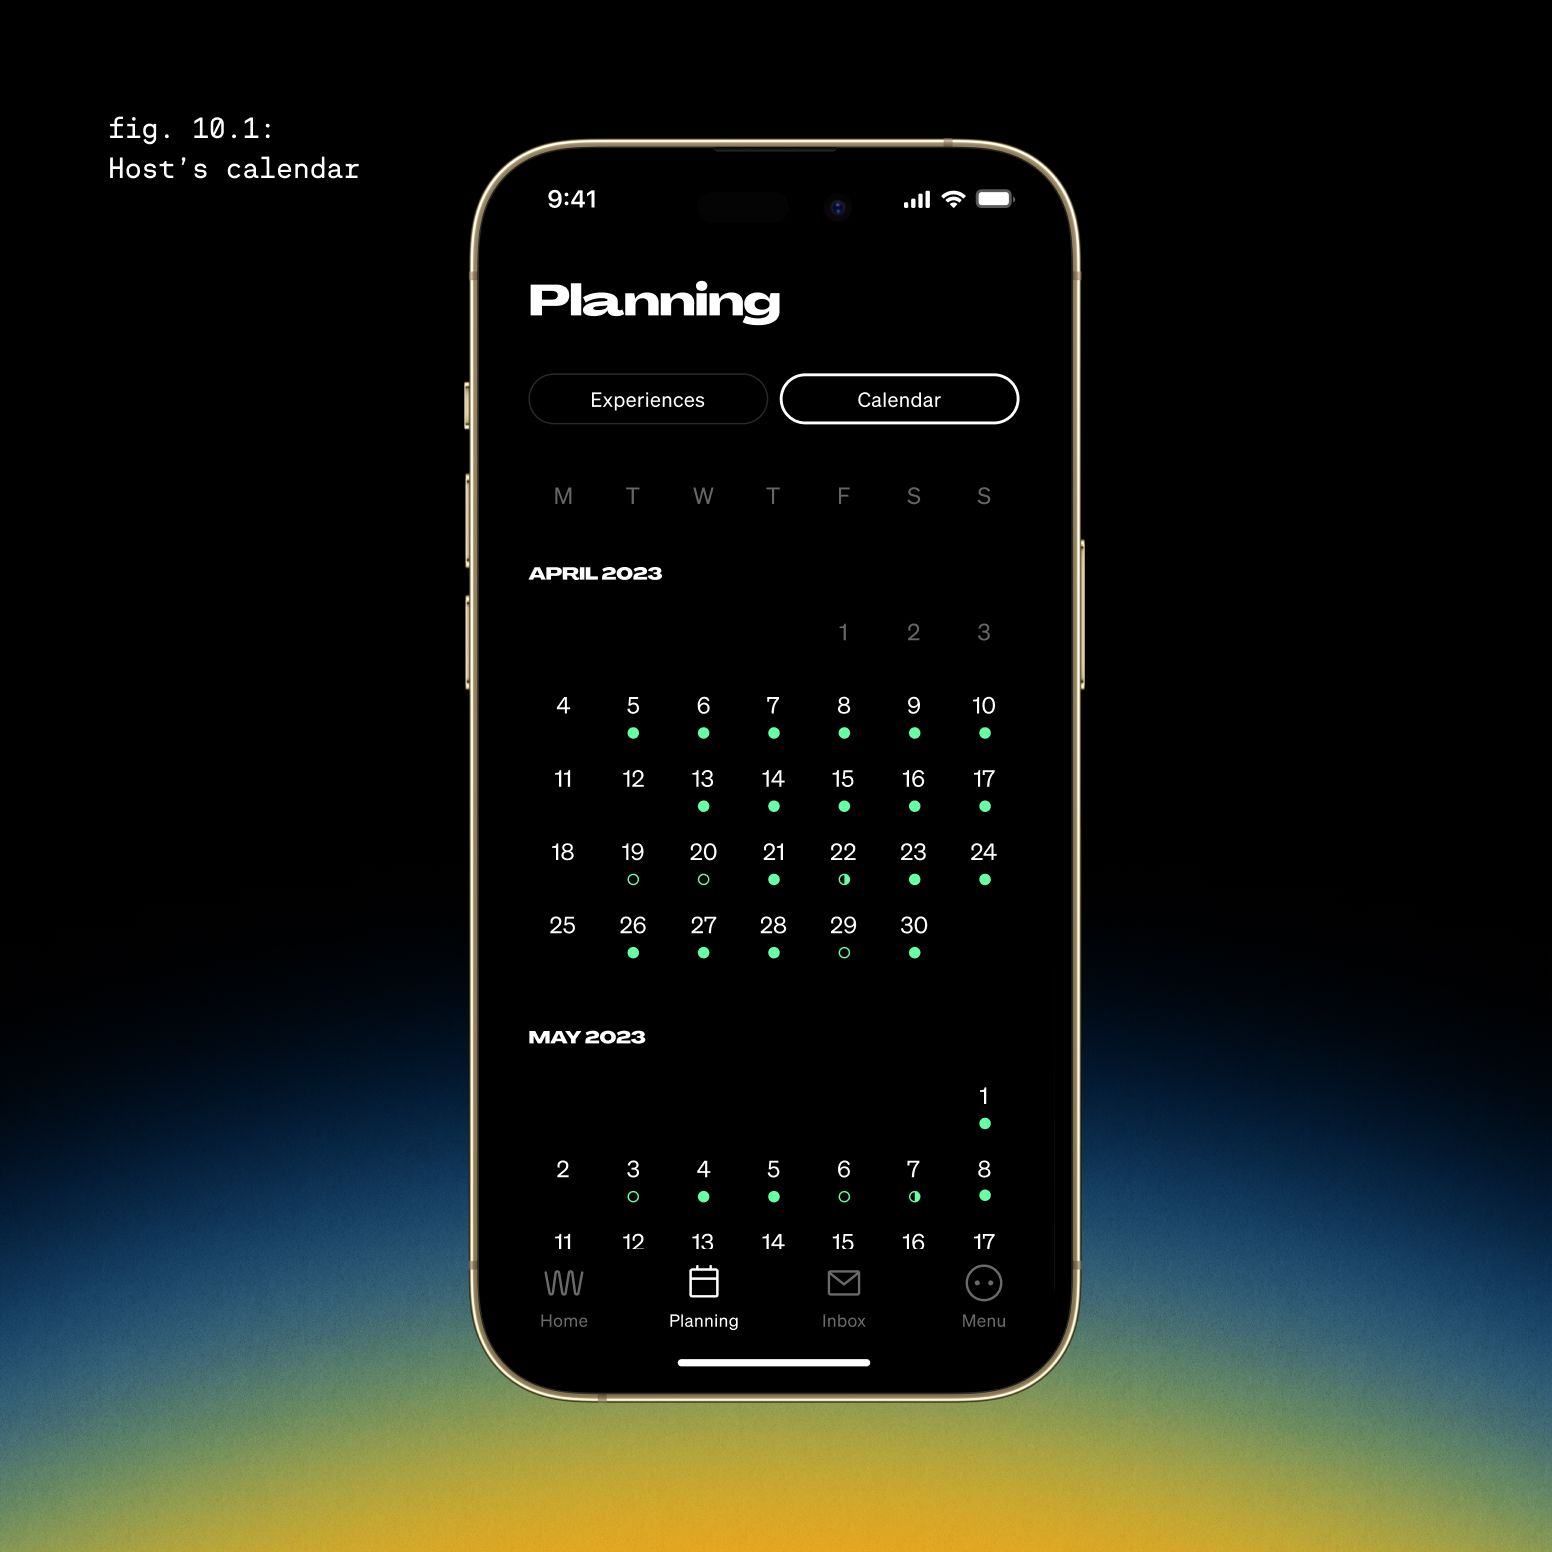 Teleporting Adventure App Planning calendar UI Design